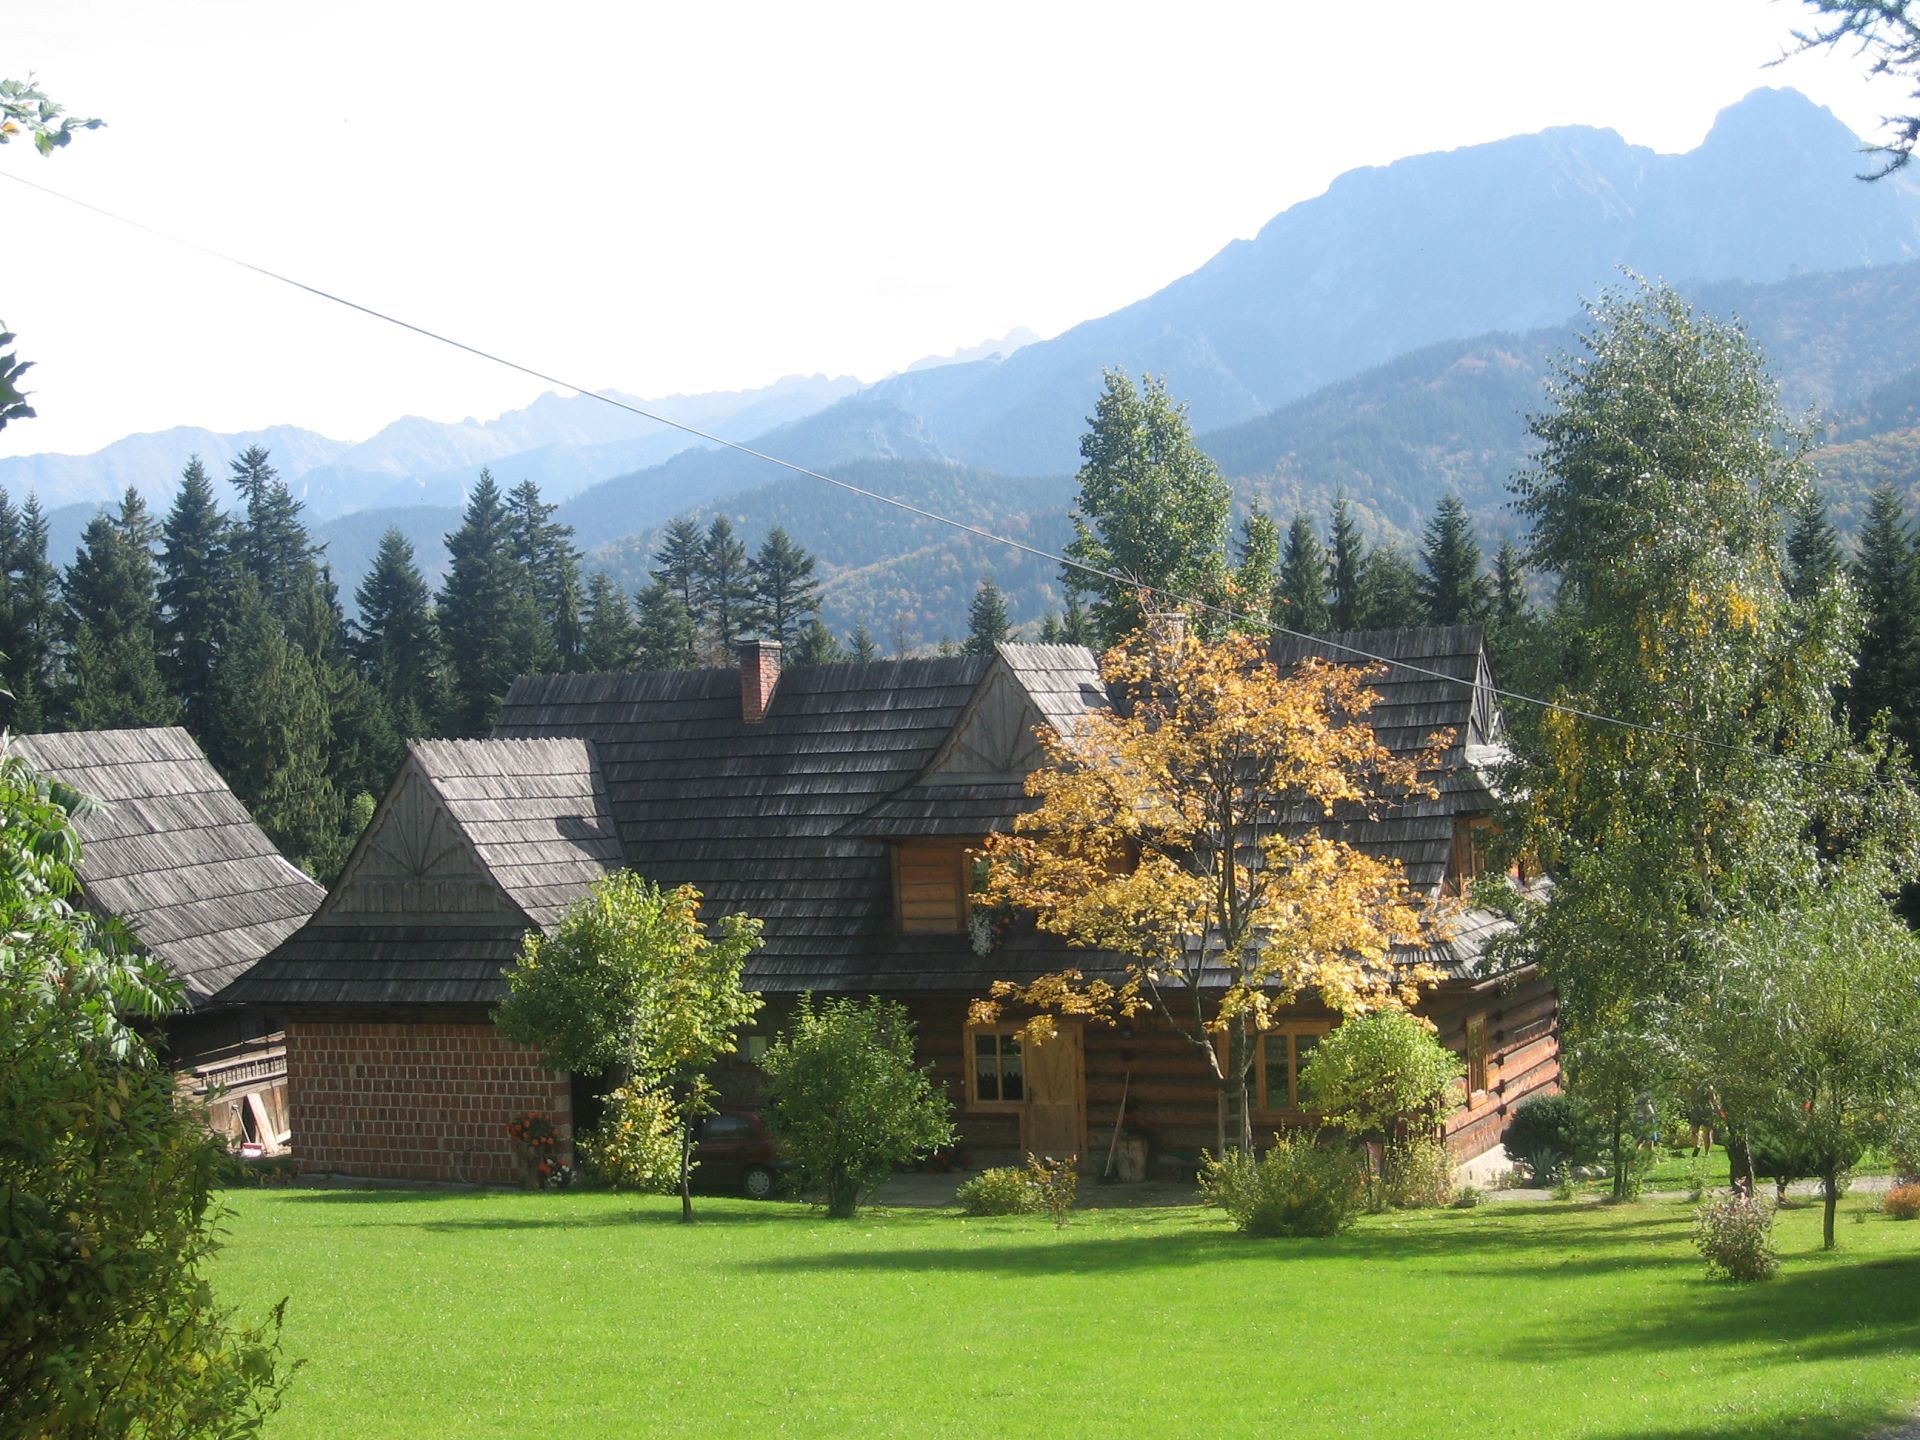 Zdjęcie przedstawia krajobraz górski z widokiem na budynek drewniany góralski jesienią